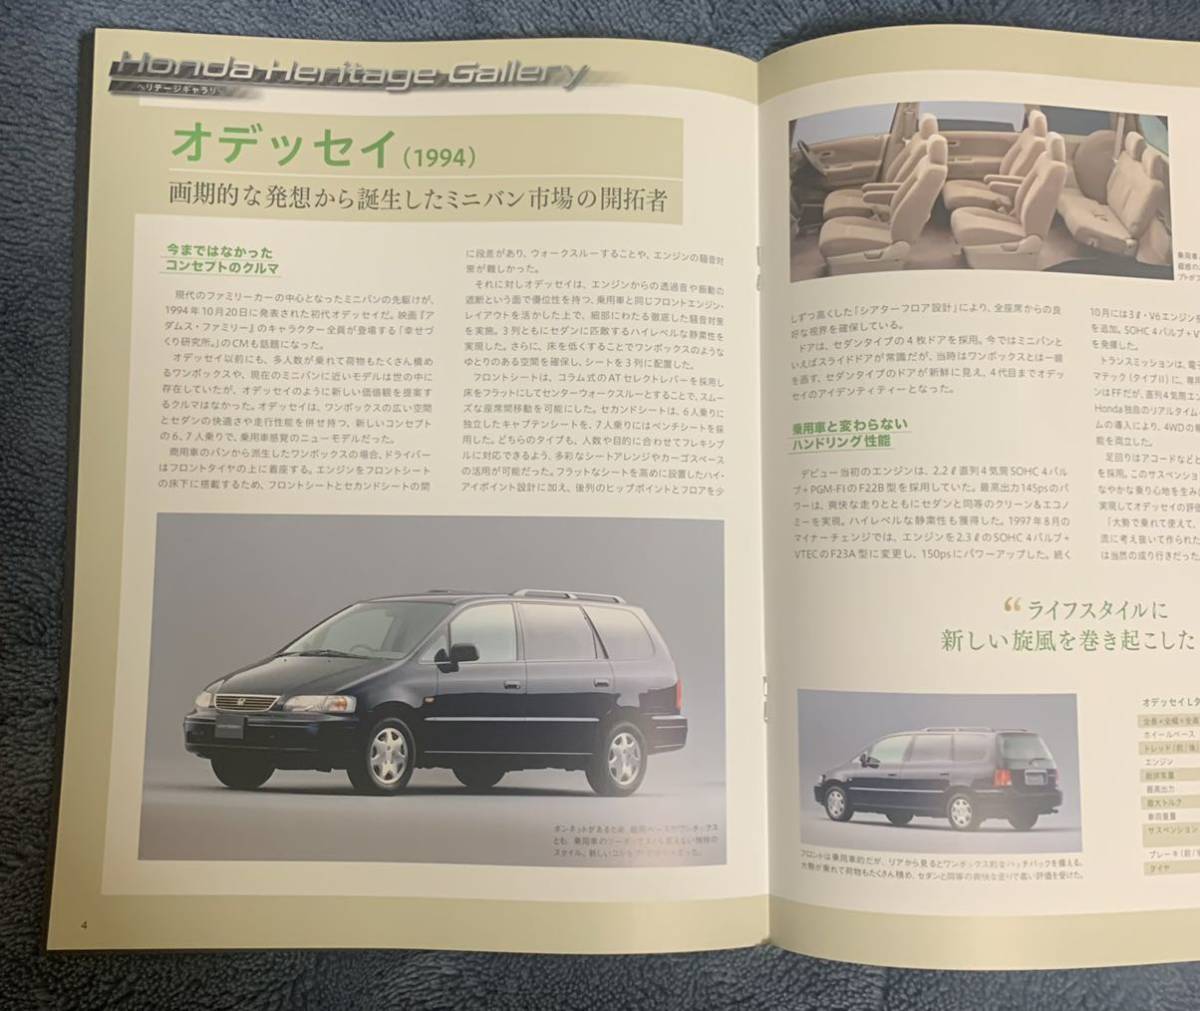  der Goss чай niDeAGOSTINI Honda Honda NSX 47 номер Odyssey (1994) брошюра только детали нет почти новый товар клик post 185 иен отправка 